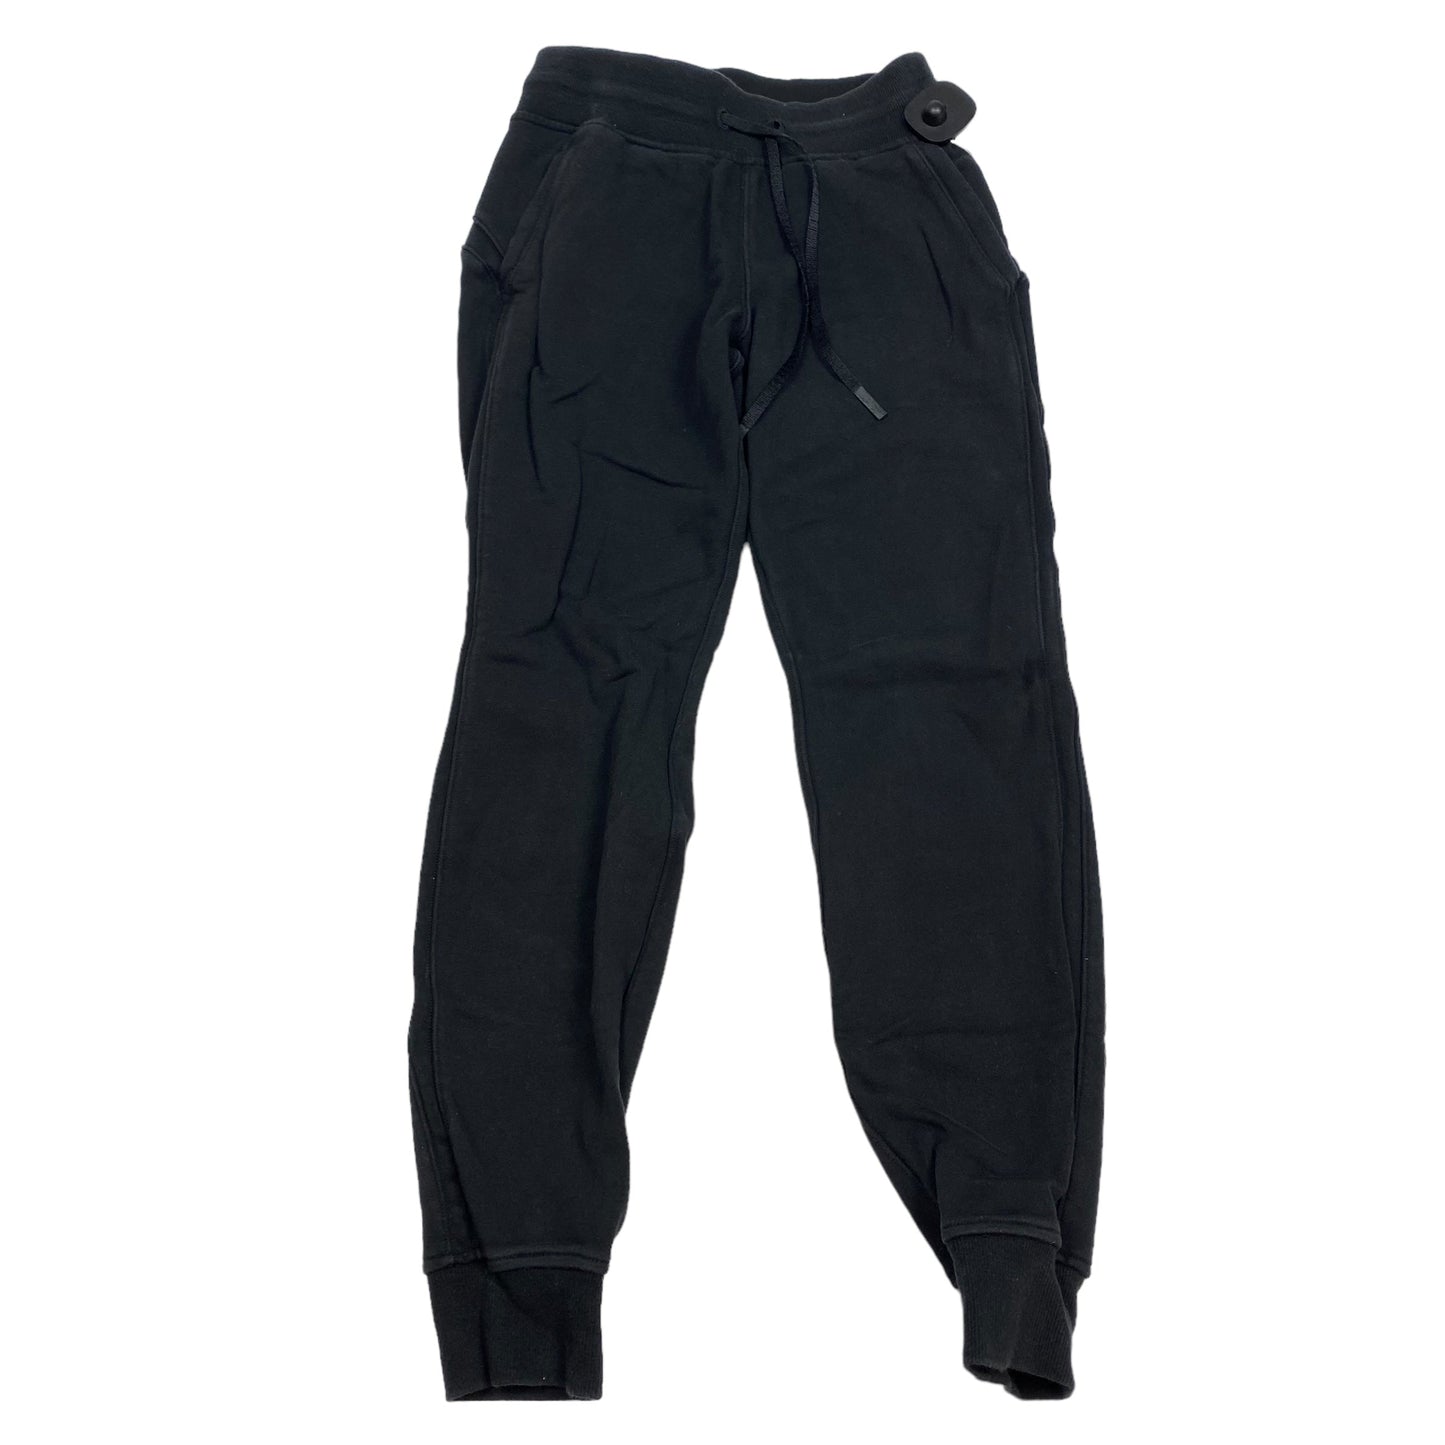 Black Athletic Pants Lululemon, Size 2